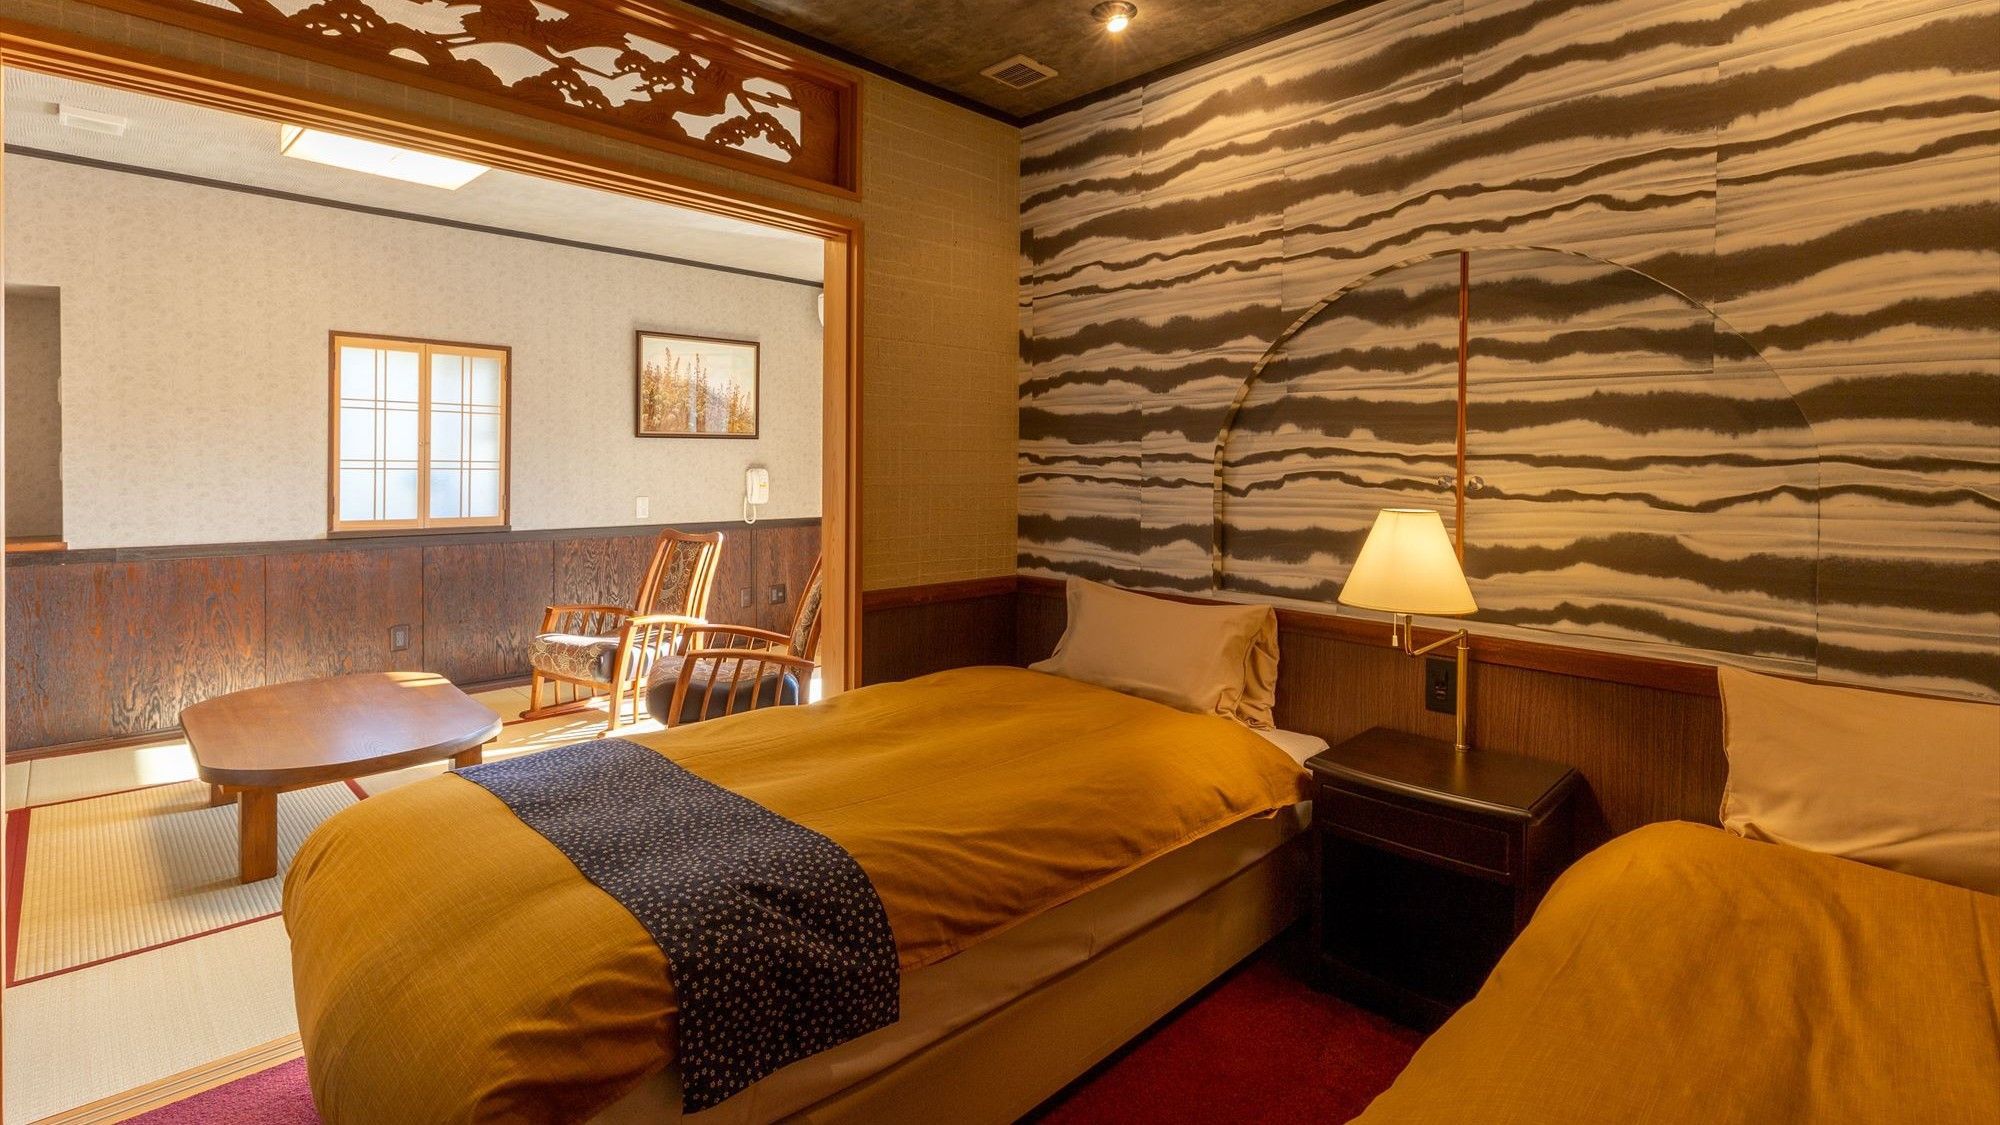 【紫陽花】客室の中でも最もシンプルなデザインの落ち着いた和室です。